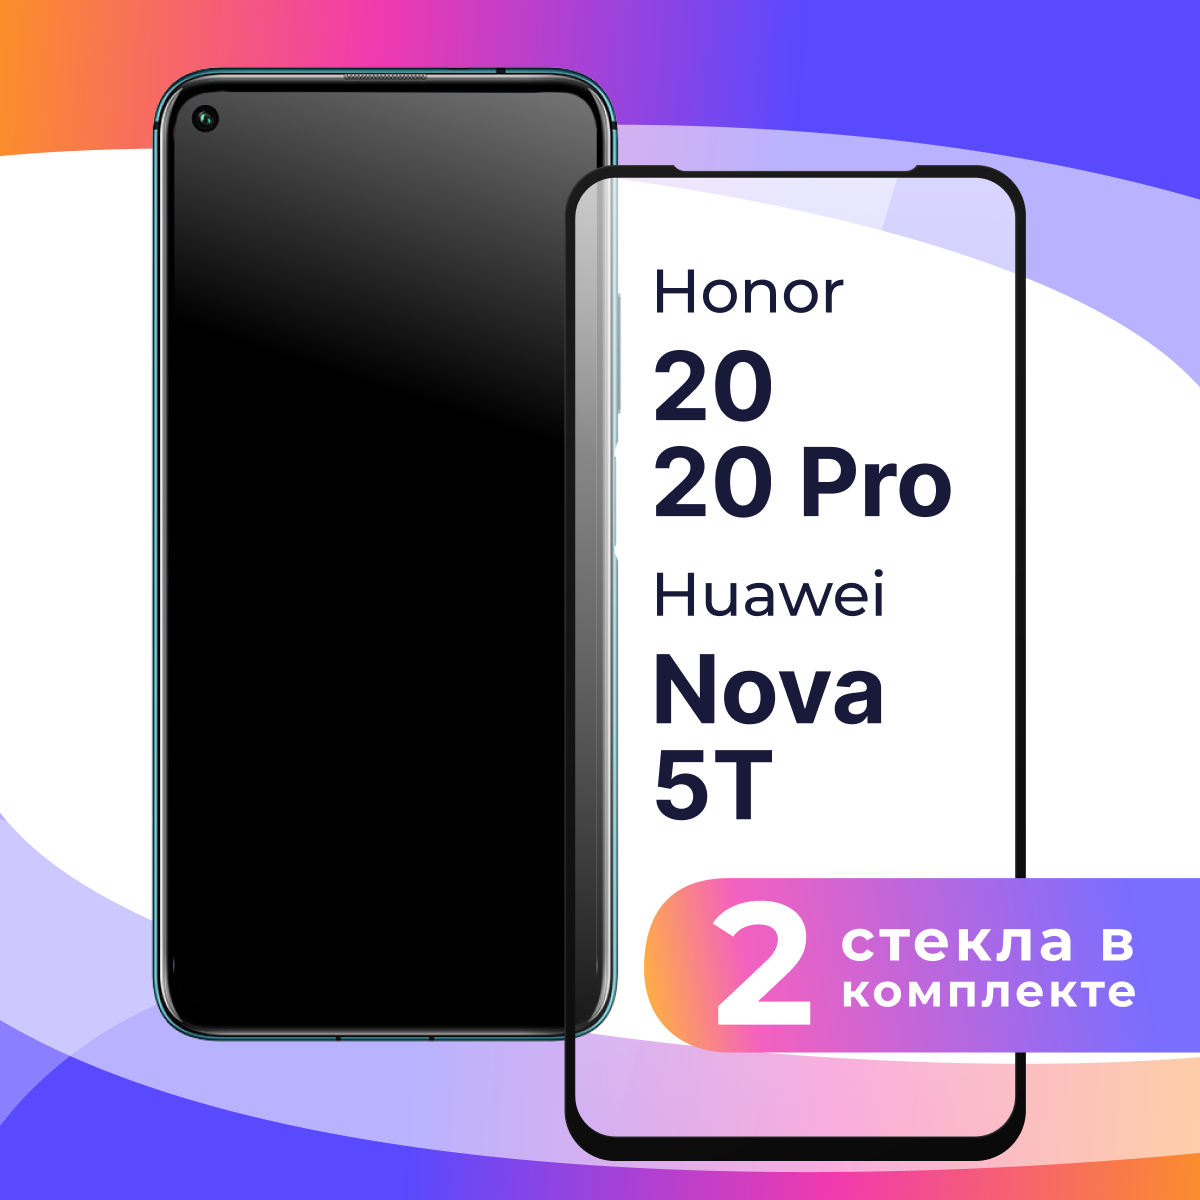 Комплект 2 шт. Защитное стекло для телефона Honor 20, 20 Pro, Huawei Nova 5T / Глянцевое противоударное стекло с олеофобным покрытием на смартфон Хонор 20, 20 Про, Хуавей Нова 5Т